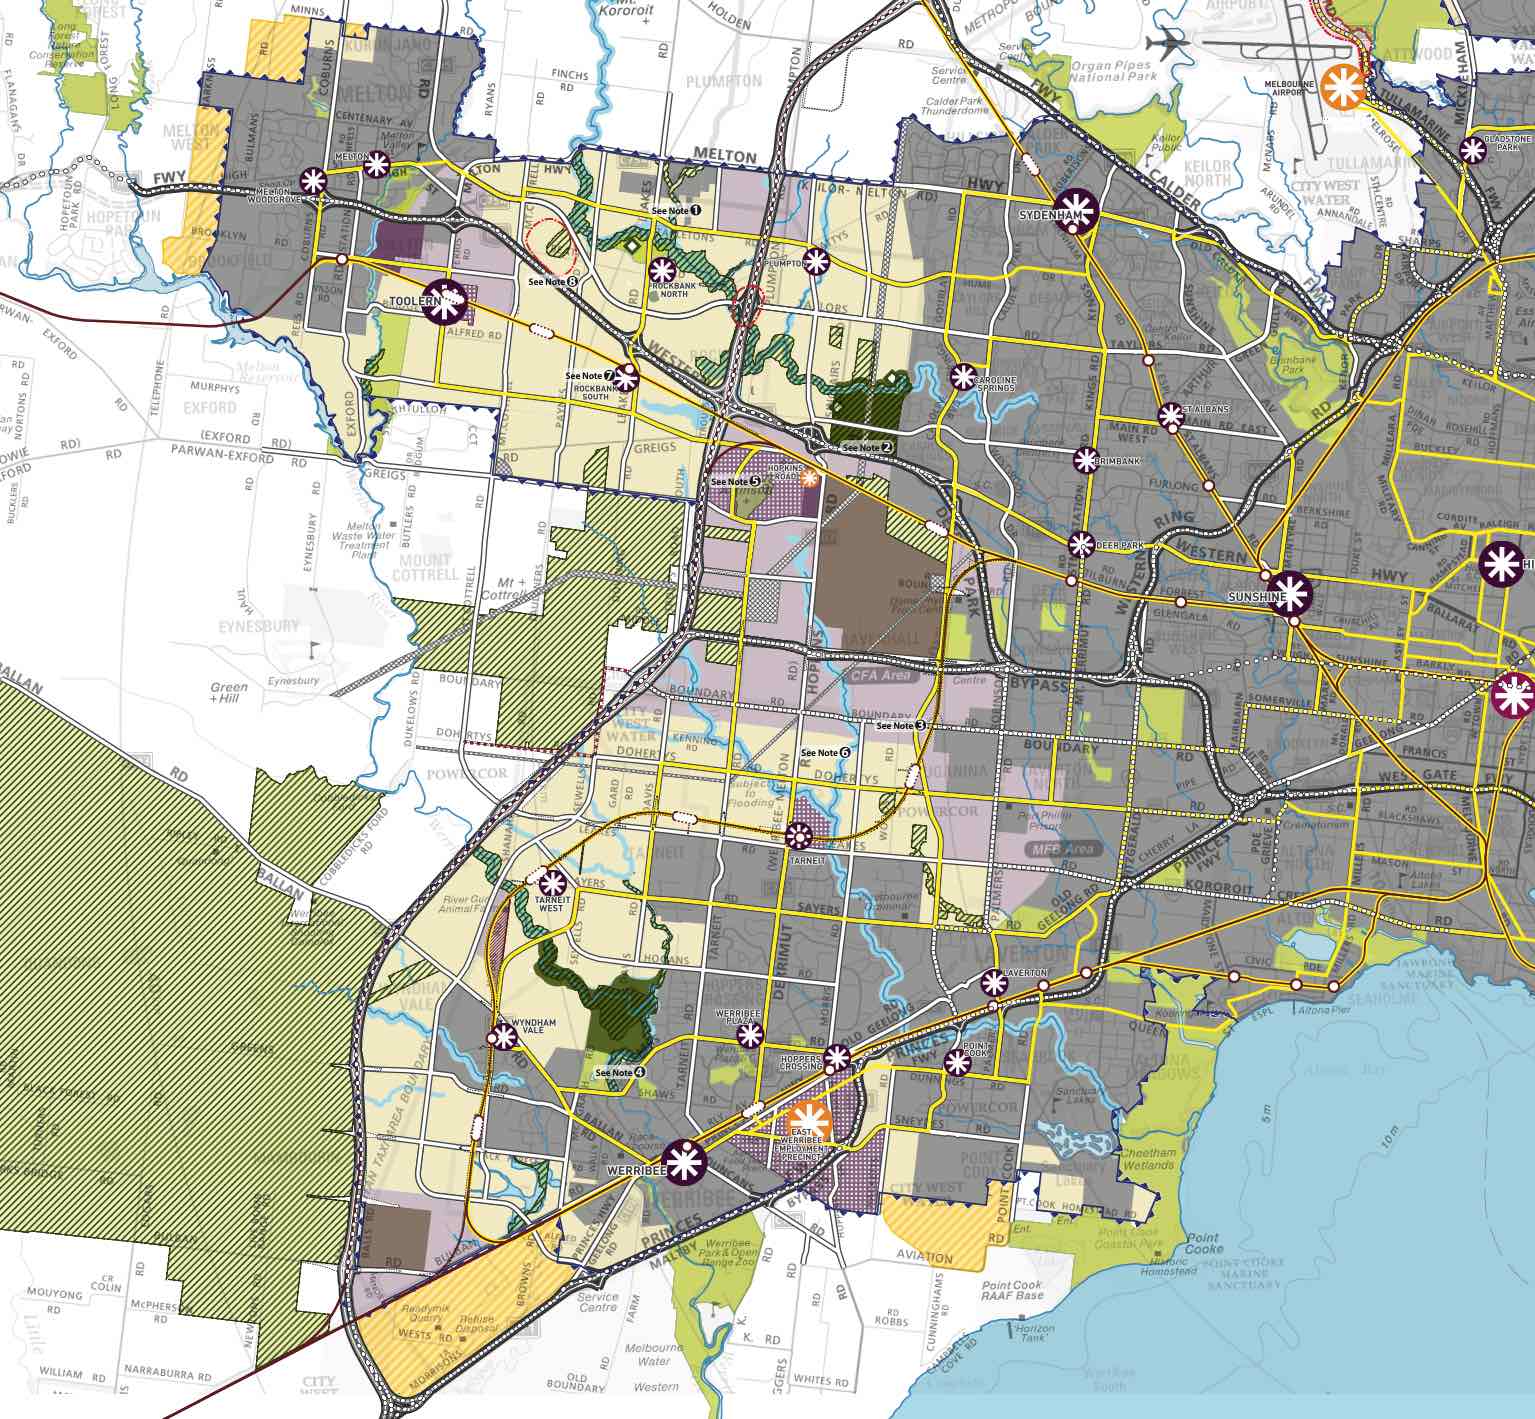 Melbourne West Growth Corridor Community Concept Plan - vpa.vic.gov.au